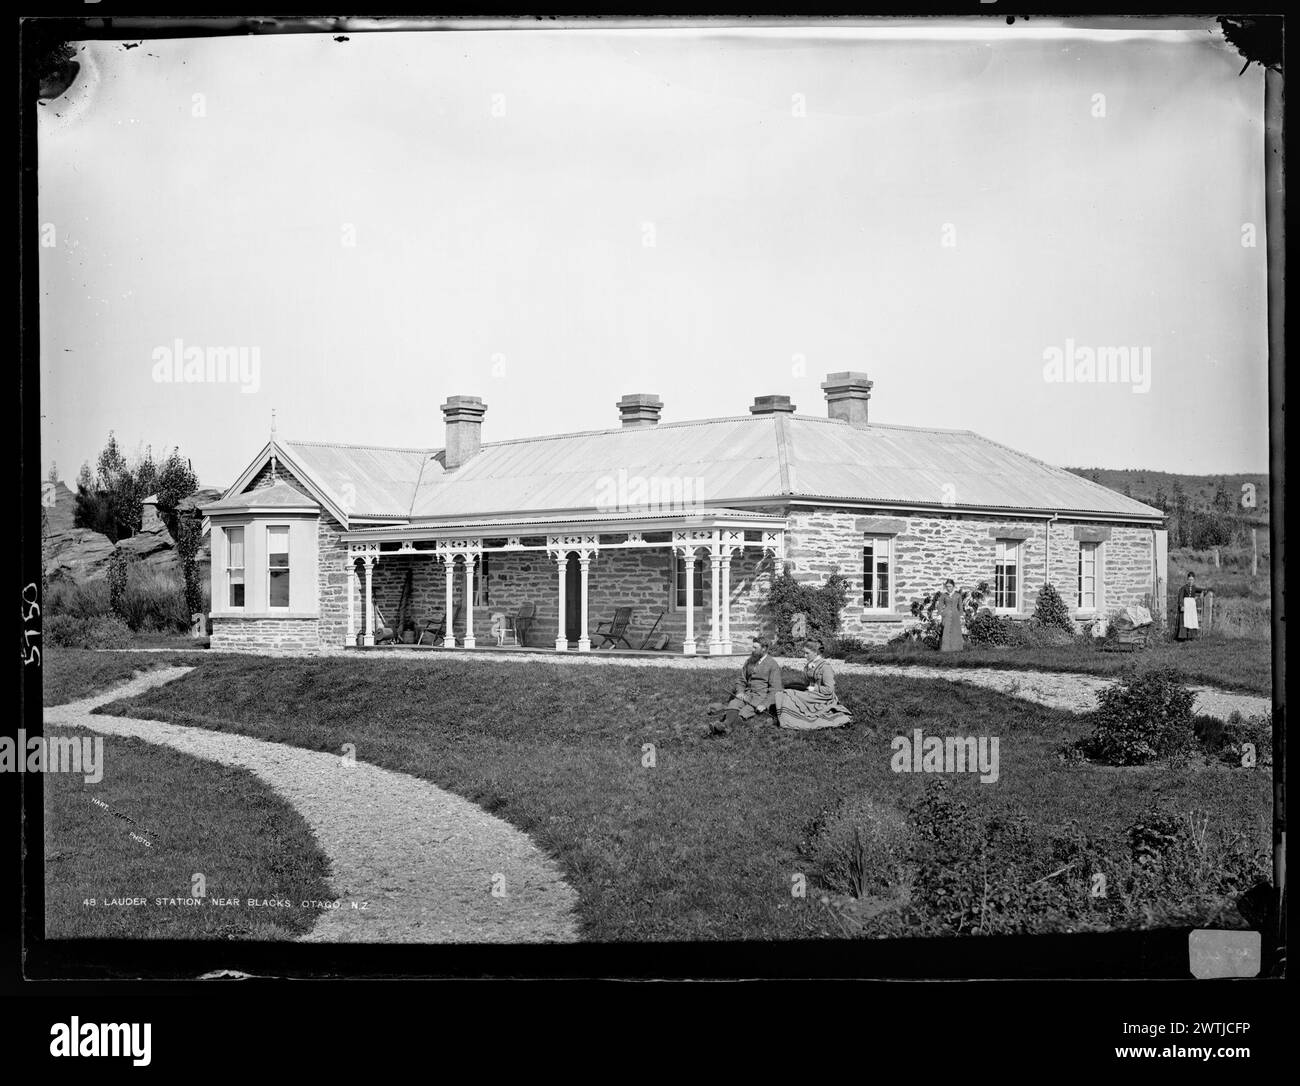 Lauder Station, Near Blacks, Otago, NZ négatifs collodion humide, négatifs noir et blanc Banque D'Images